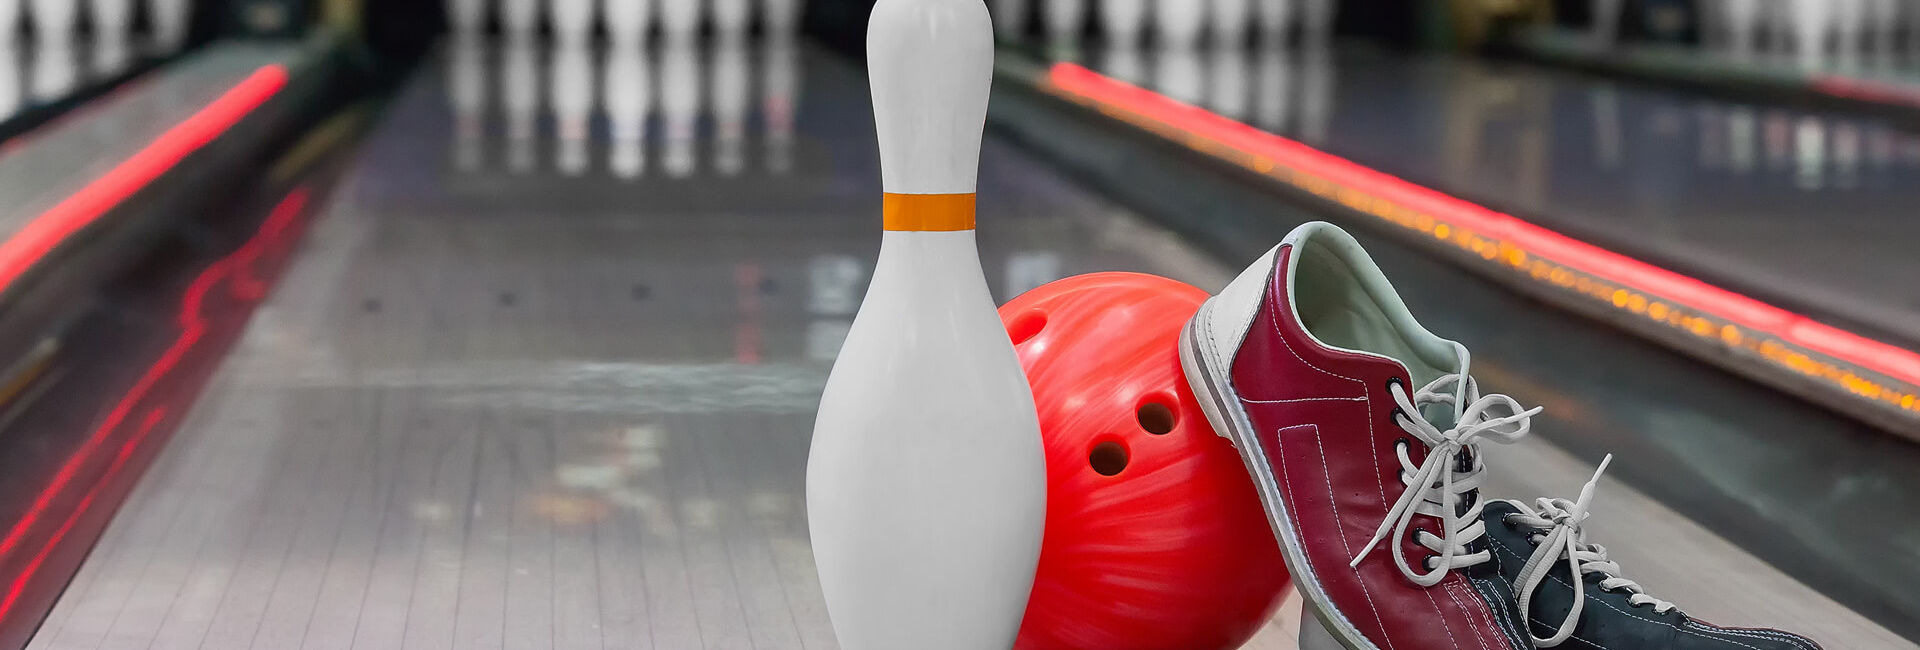 Bowlingbaan bowlingpin bowlingbal bowlingschoenen